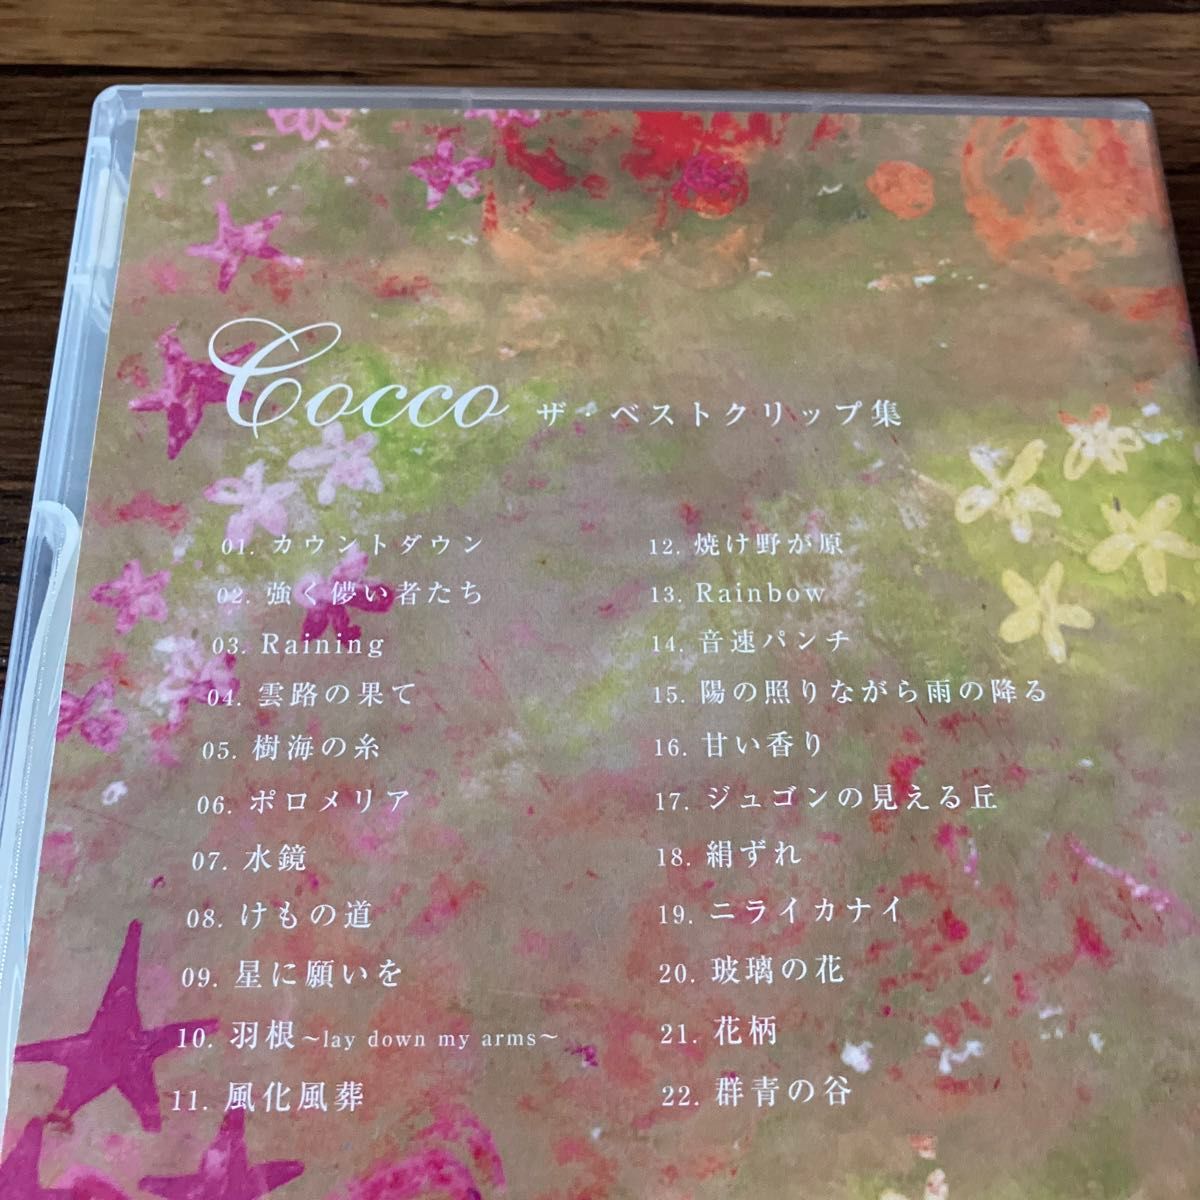 Cocco ザ・ベストクリップ集  DVD